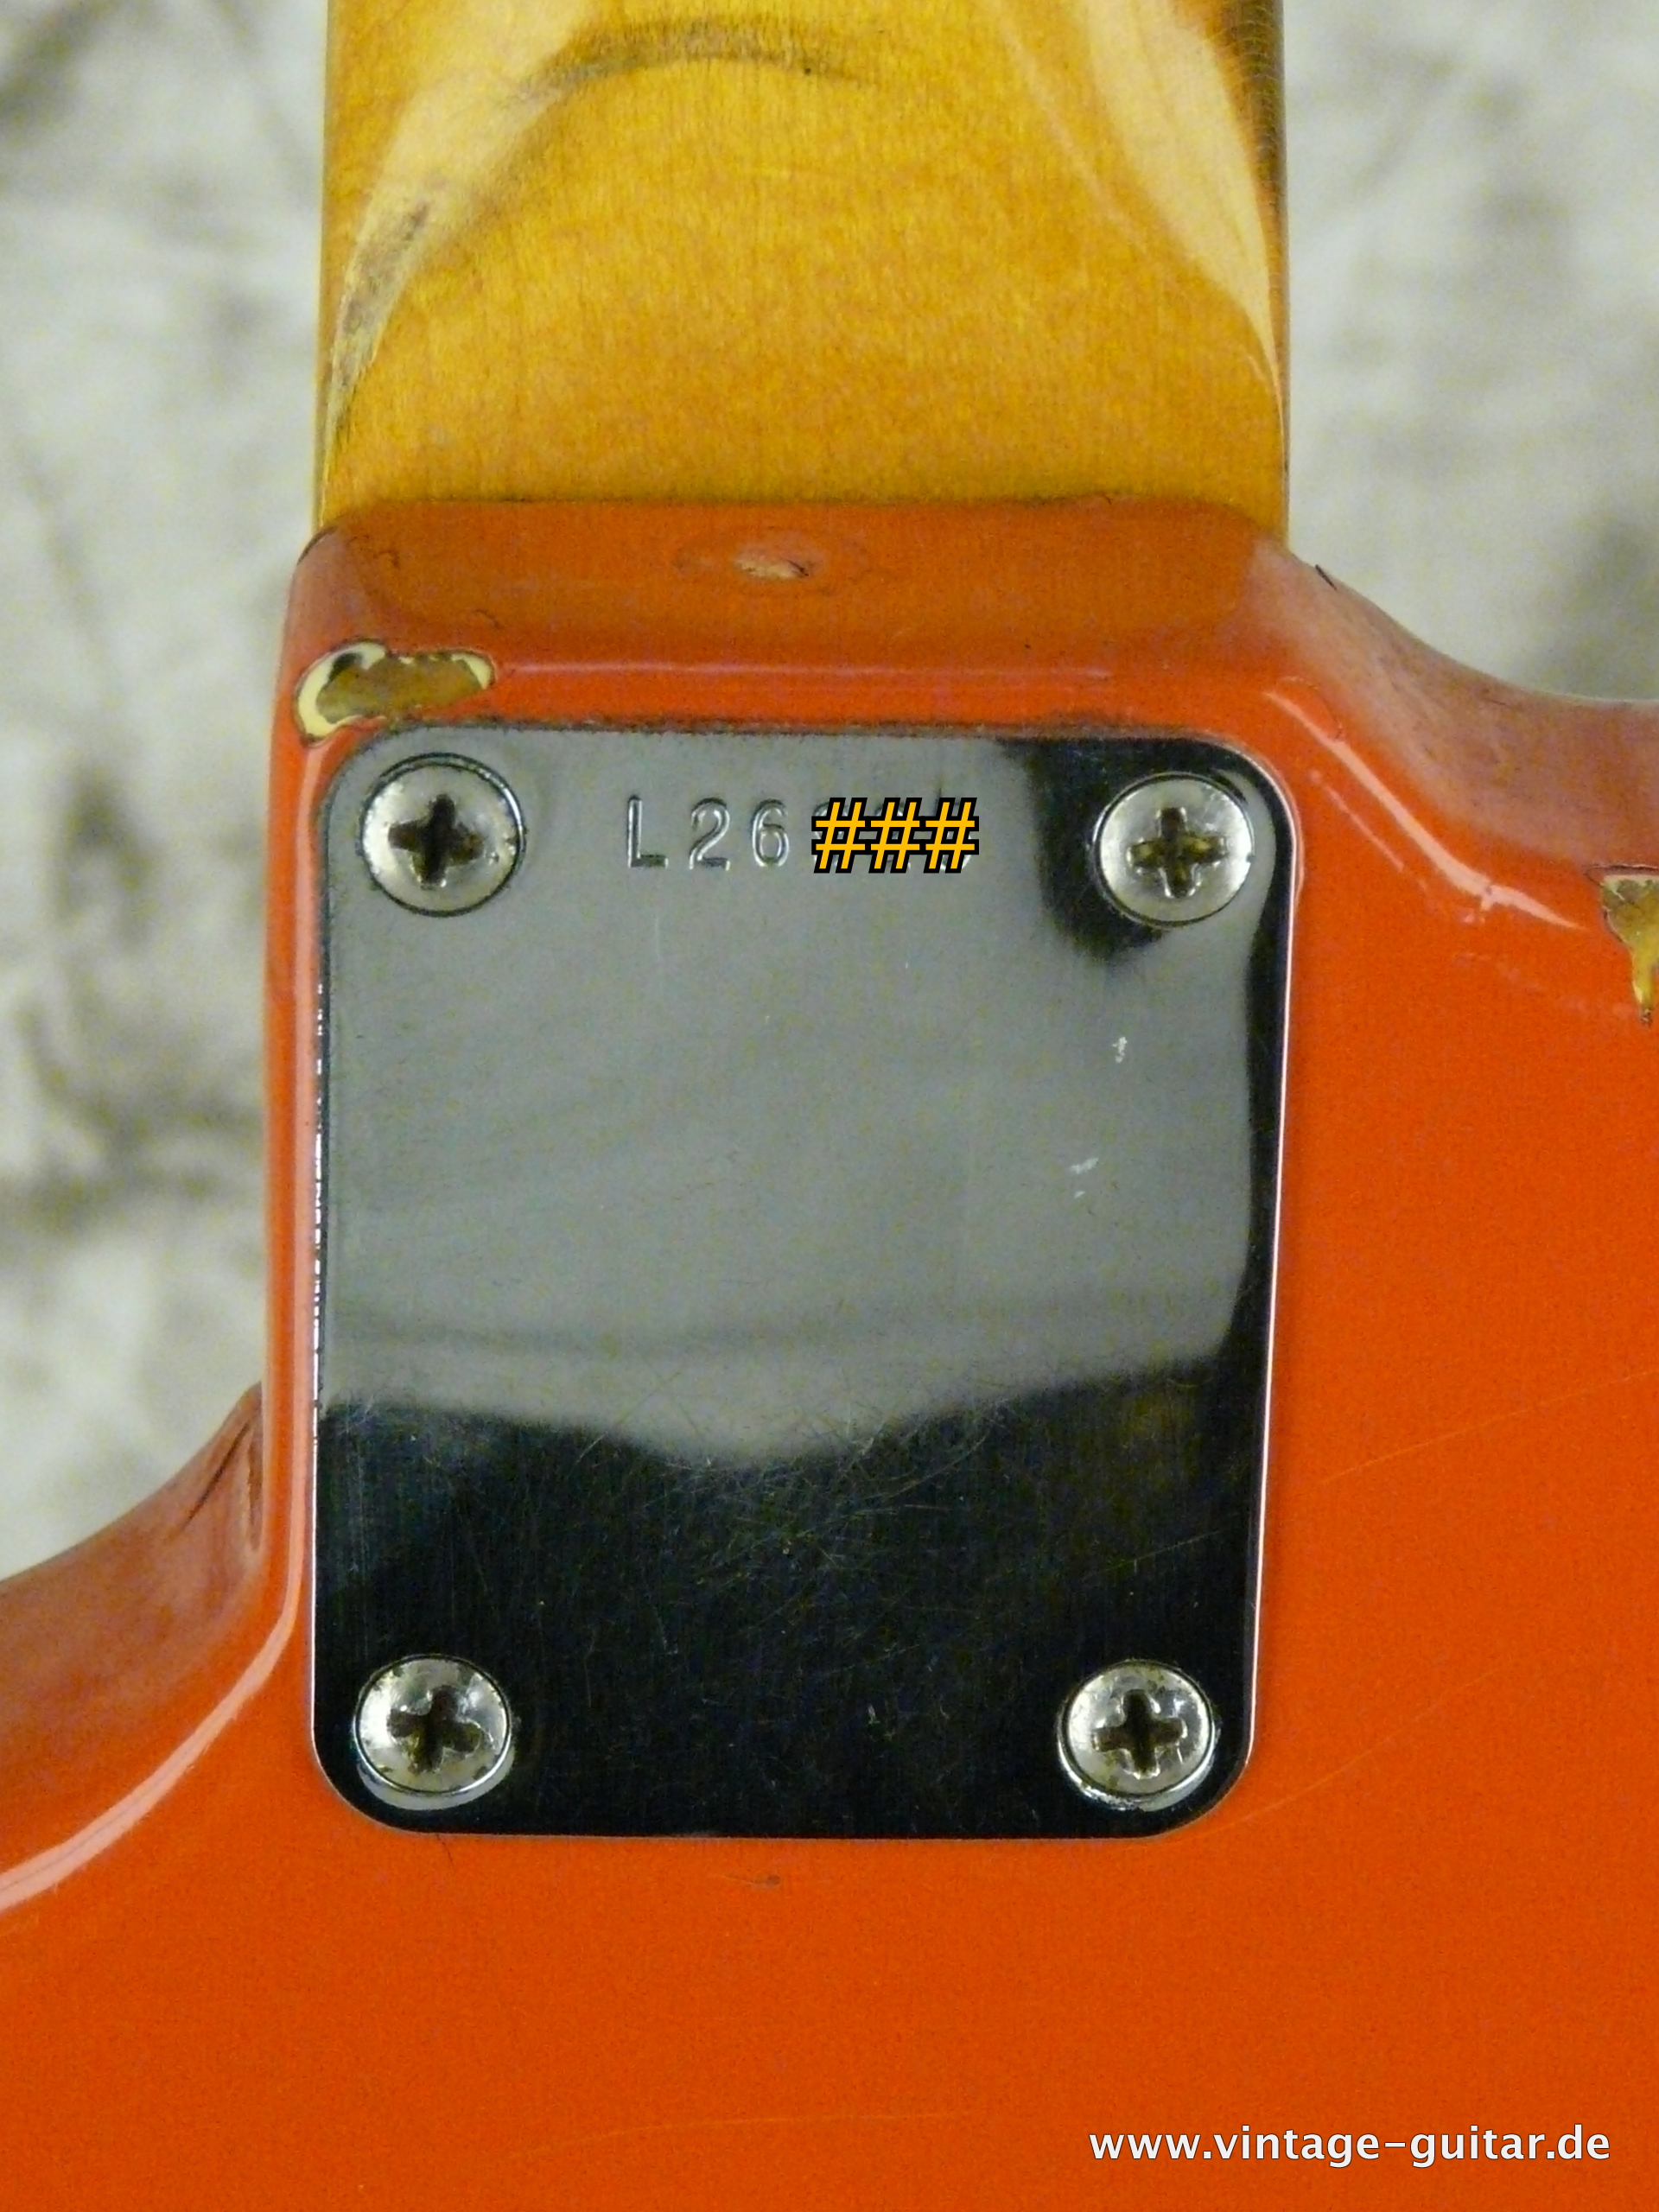 Fender-Jazzmaster-1964-refinished-fiesta-red-011.JPG